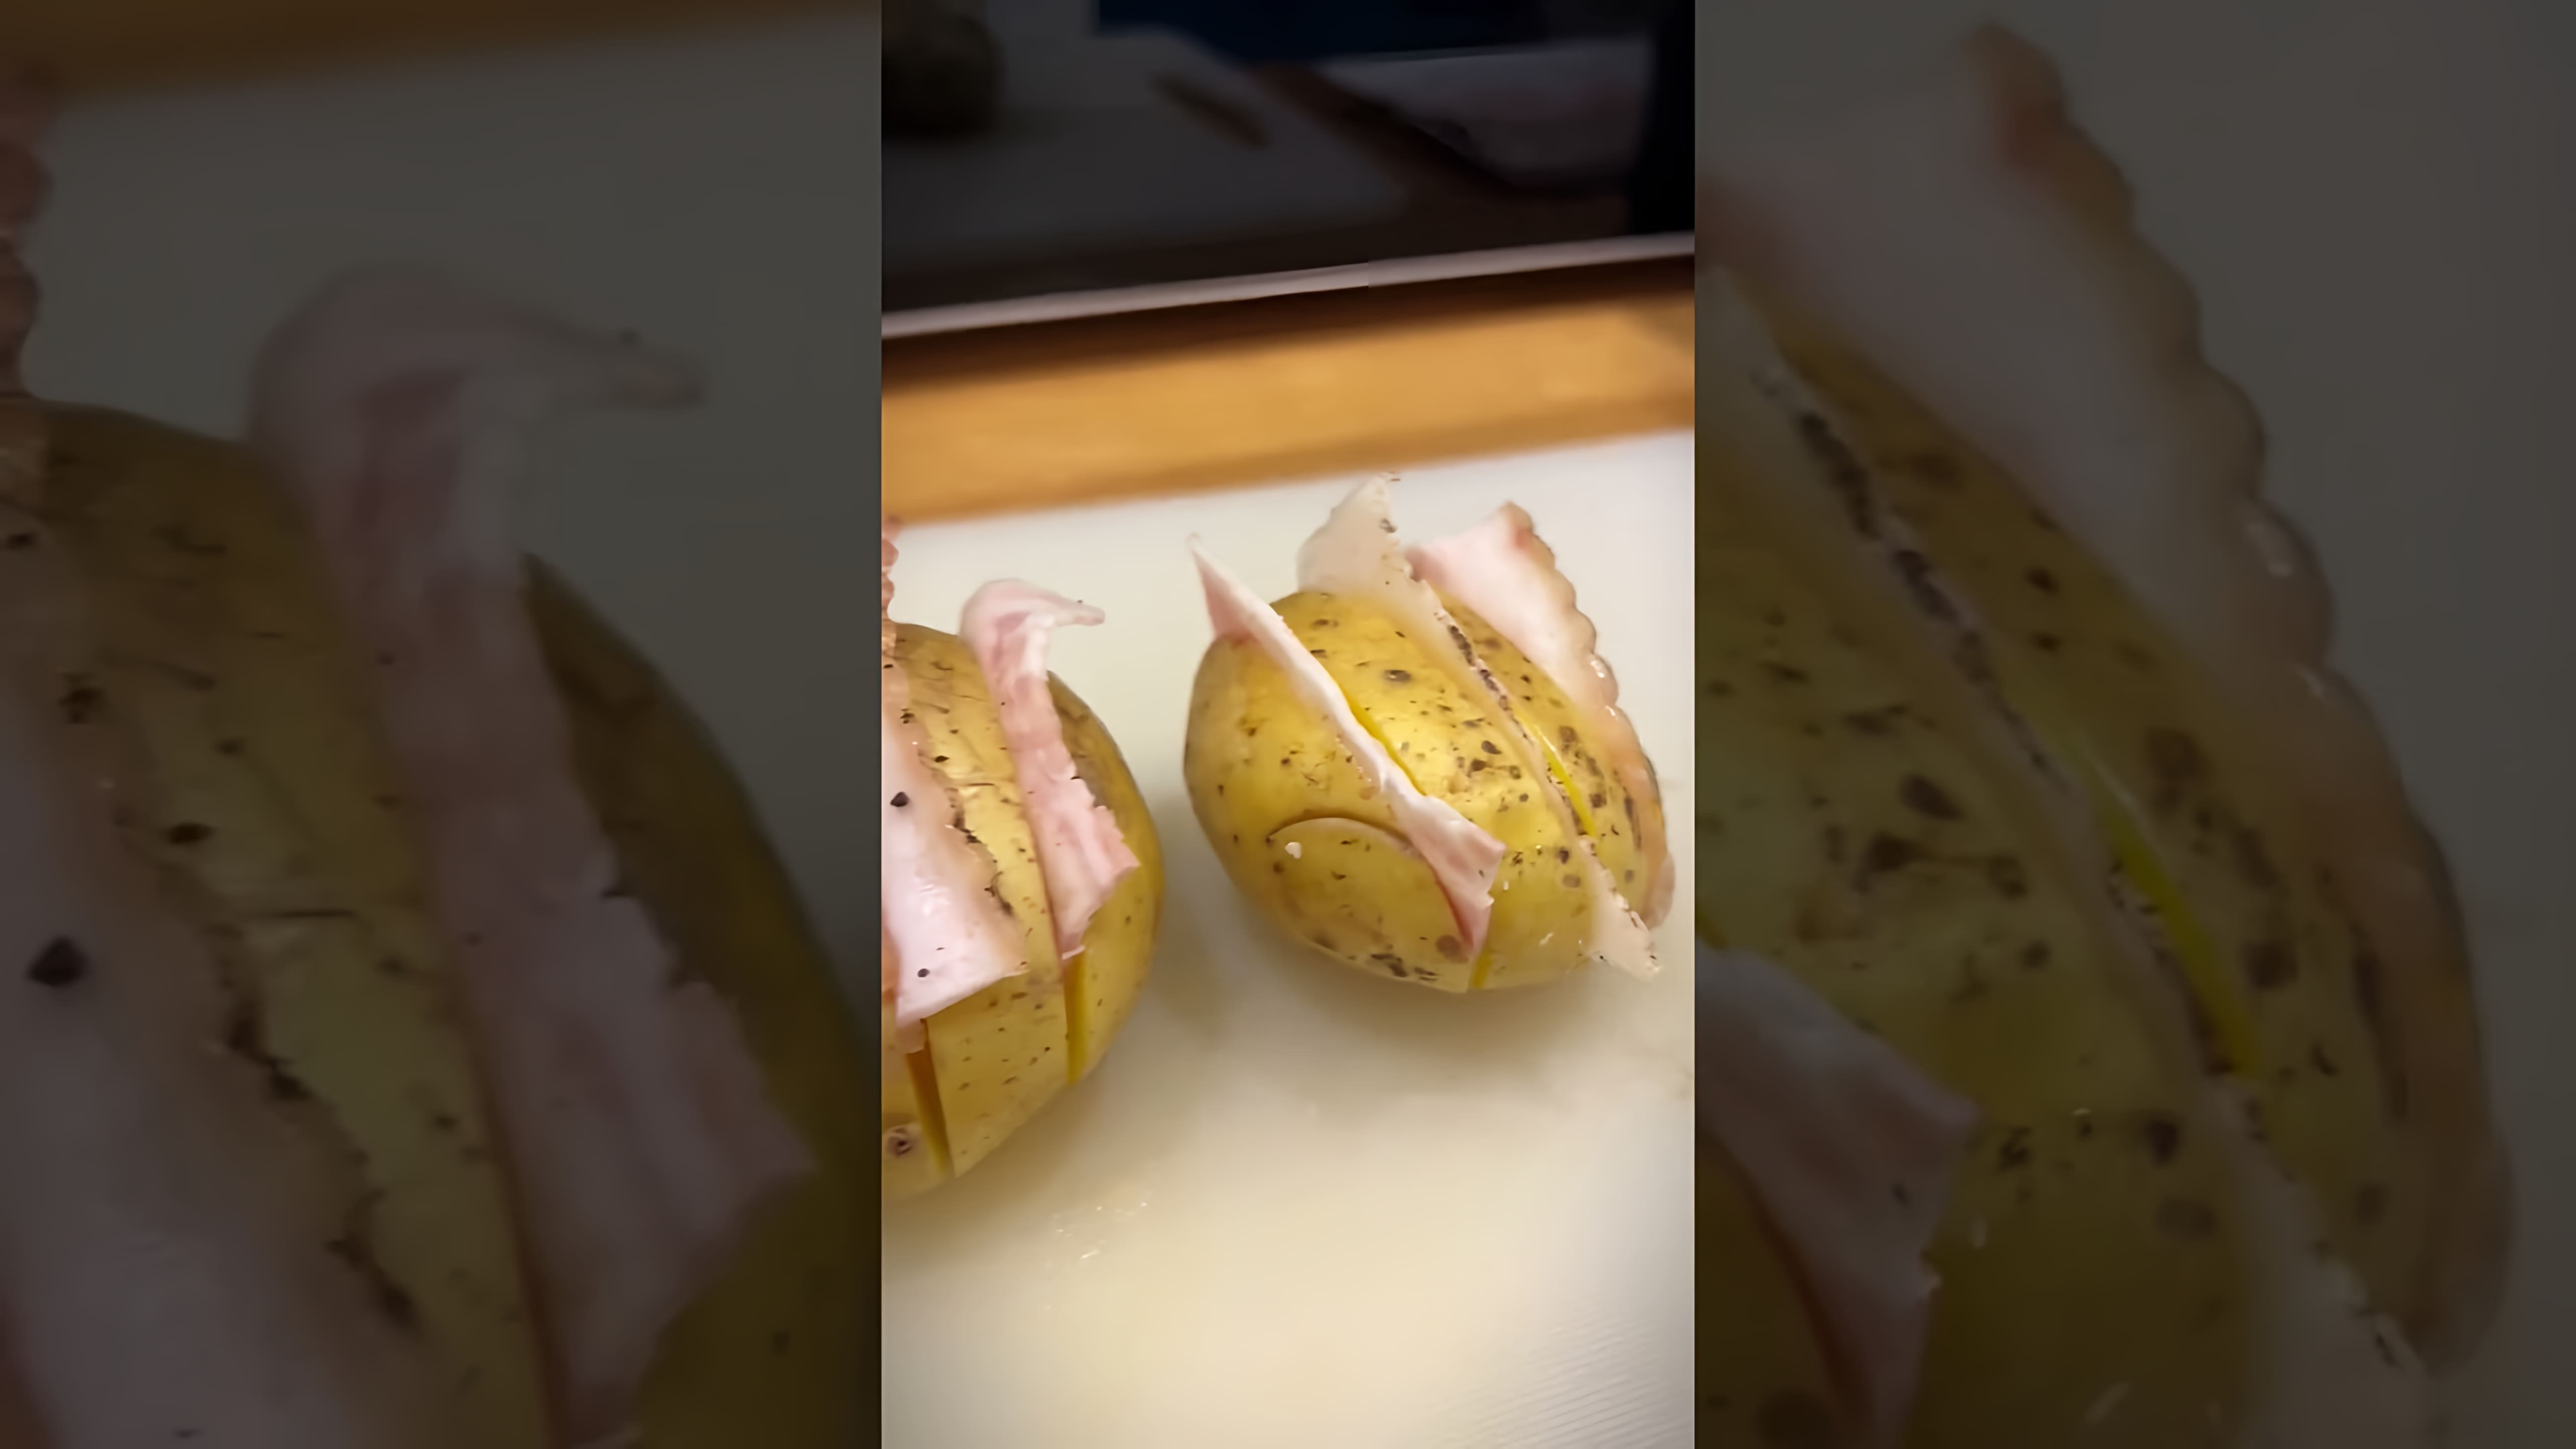 Вкусная Картошка с салом в фольге! Печёный картофель с беконом на углях - это видео-ролик, который демонстрирует процесс приготовления вкусного и ароматного блюда из картофеля и бекона на углях